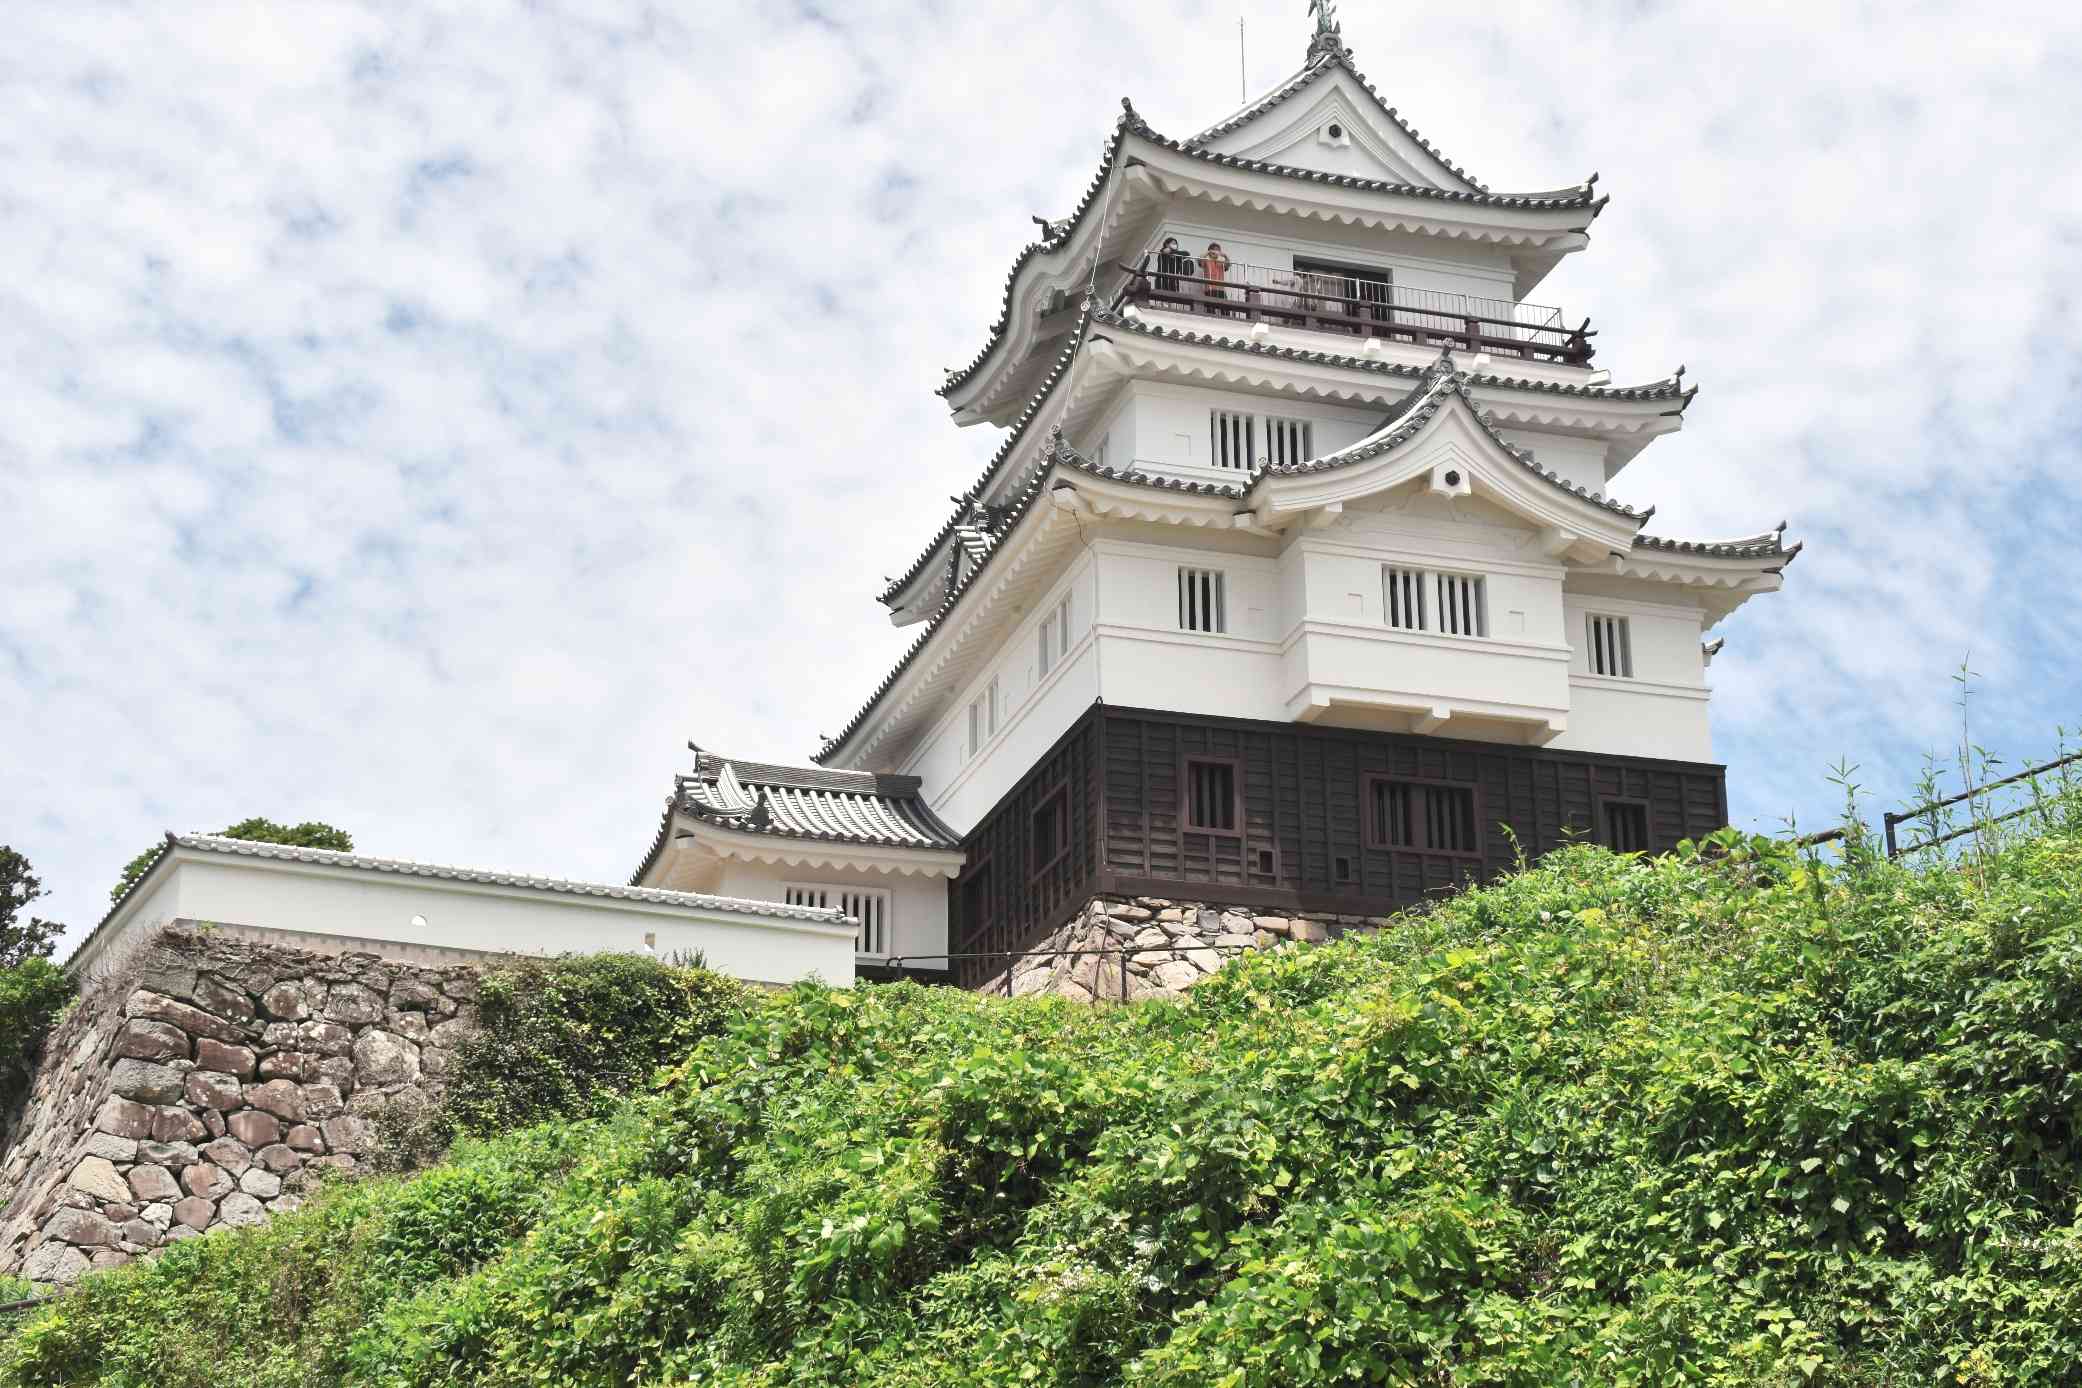 改修が終わり、一般公開されている平戸城の天守閣。最上階からの眺めは格別だ＝長崎県平戸市